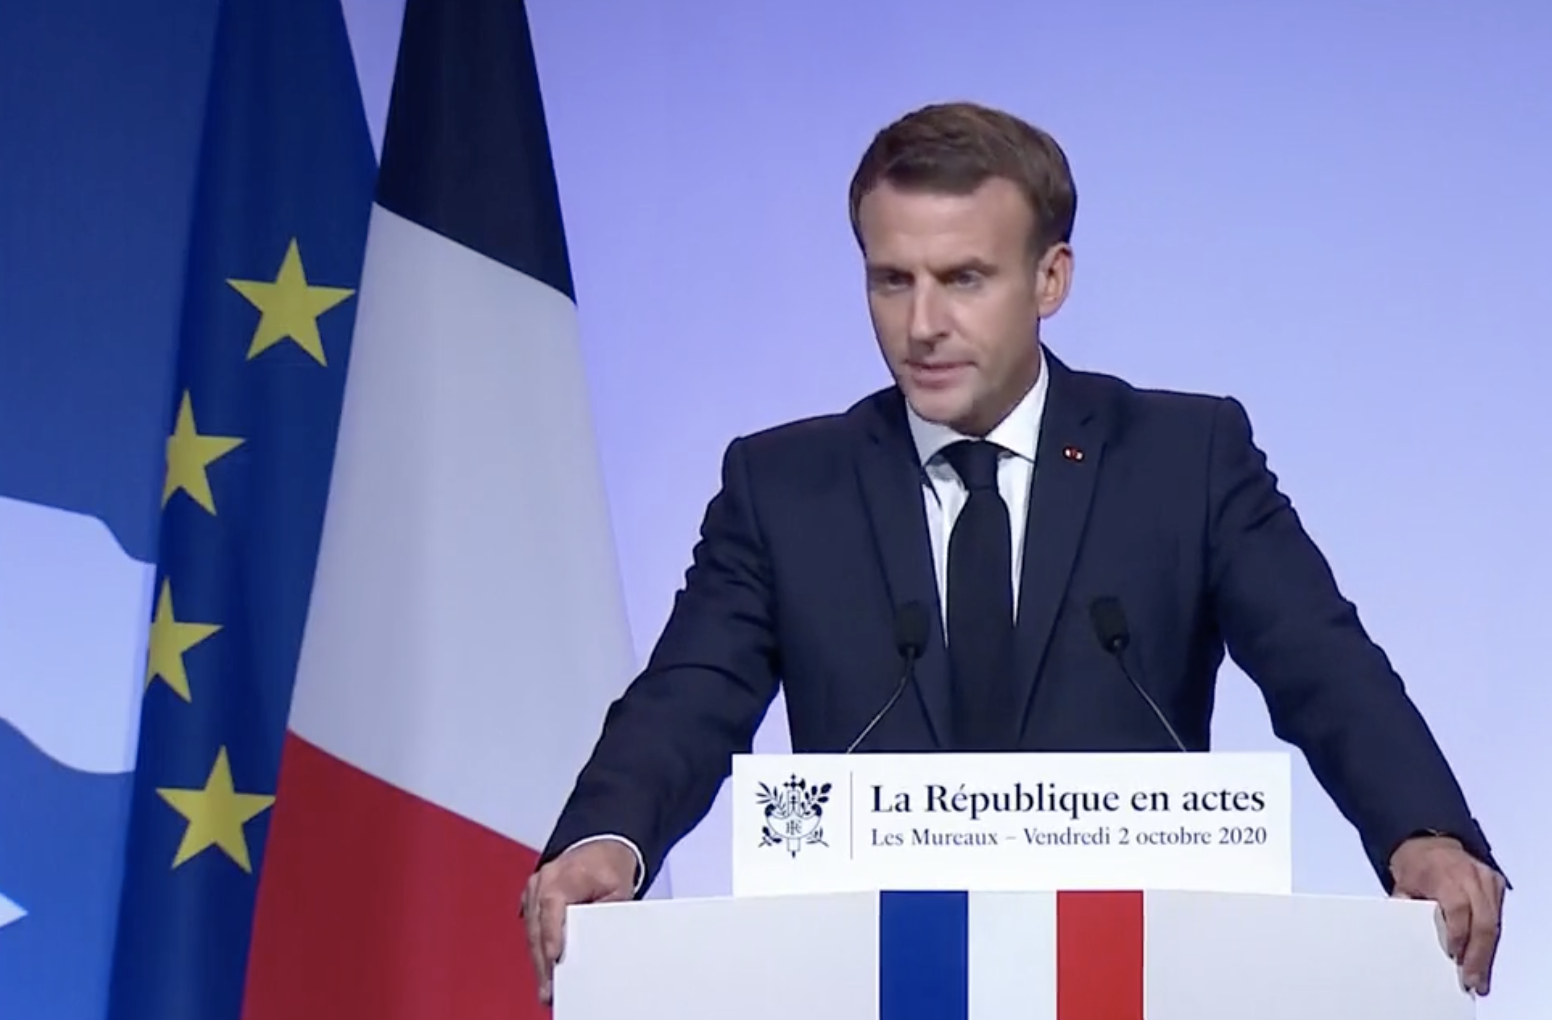 Vidéo - Ce qu'il faut retenir du discours de Macron sur le séparatisme islamiste